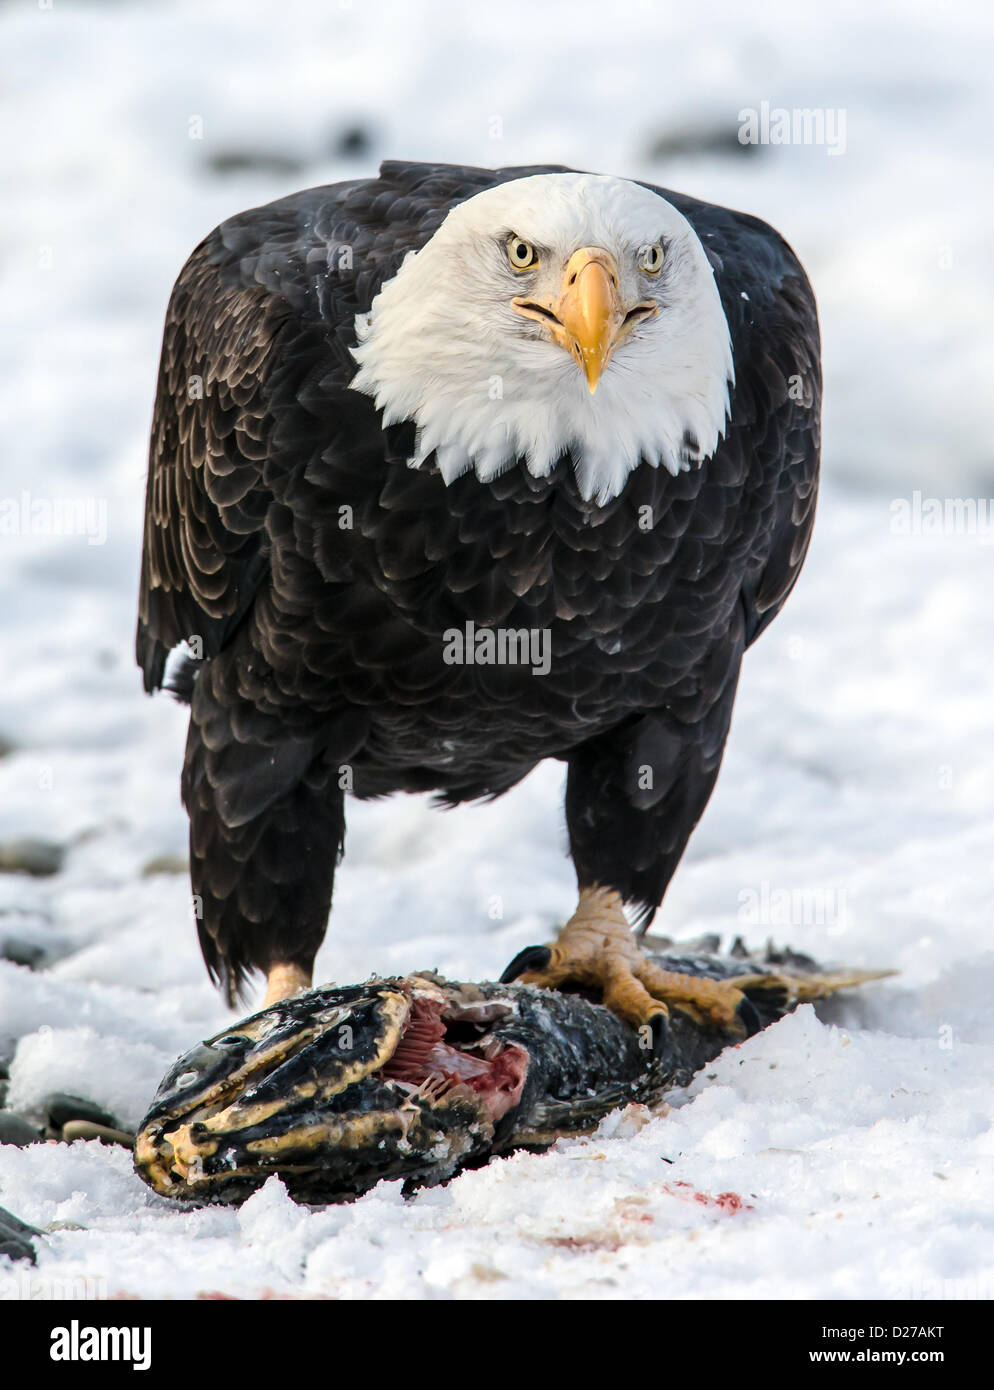 águila calva muerta fotografías e imágenes de alta resolución - Página 7 -  Alamy